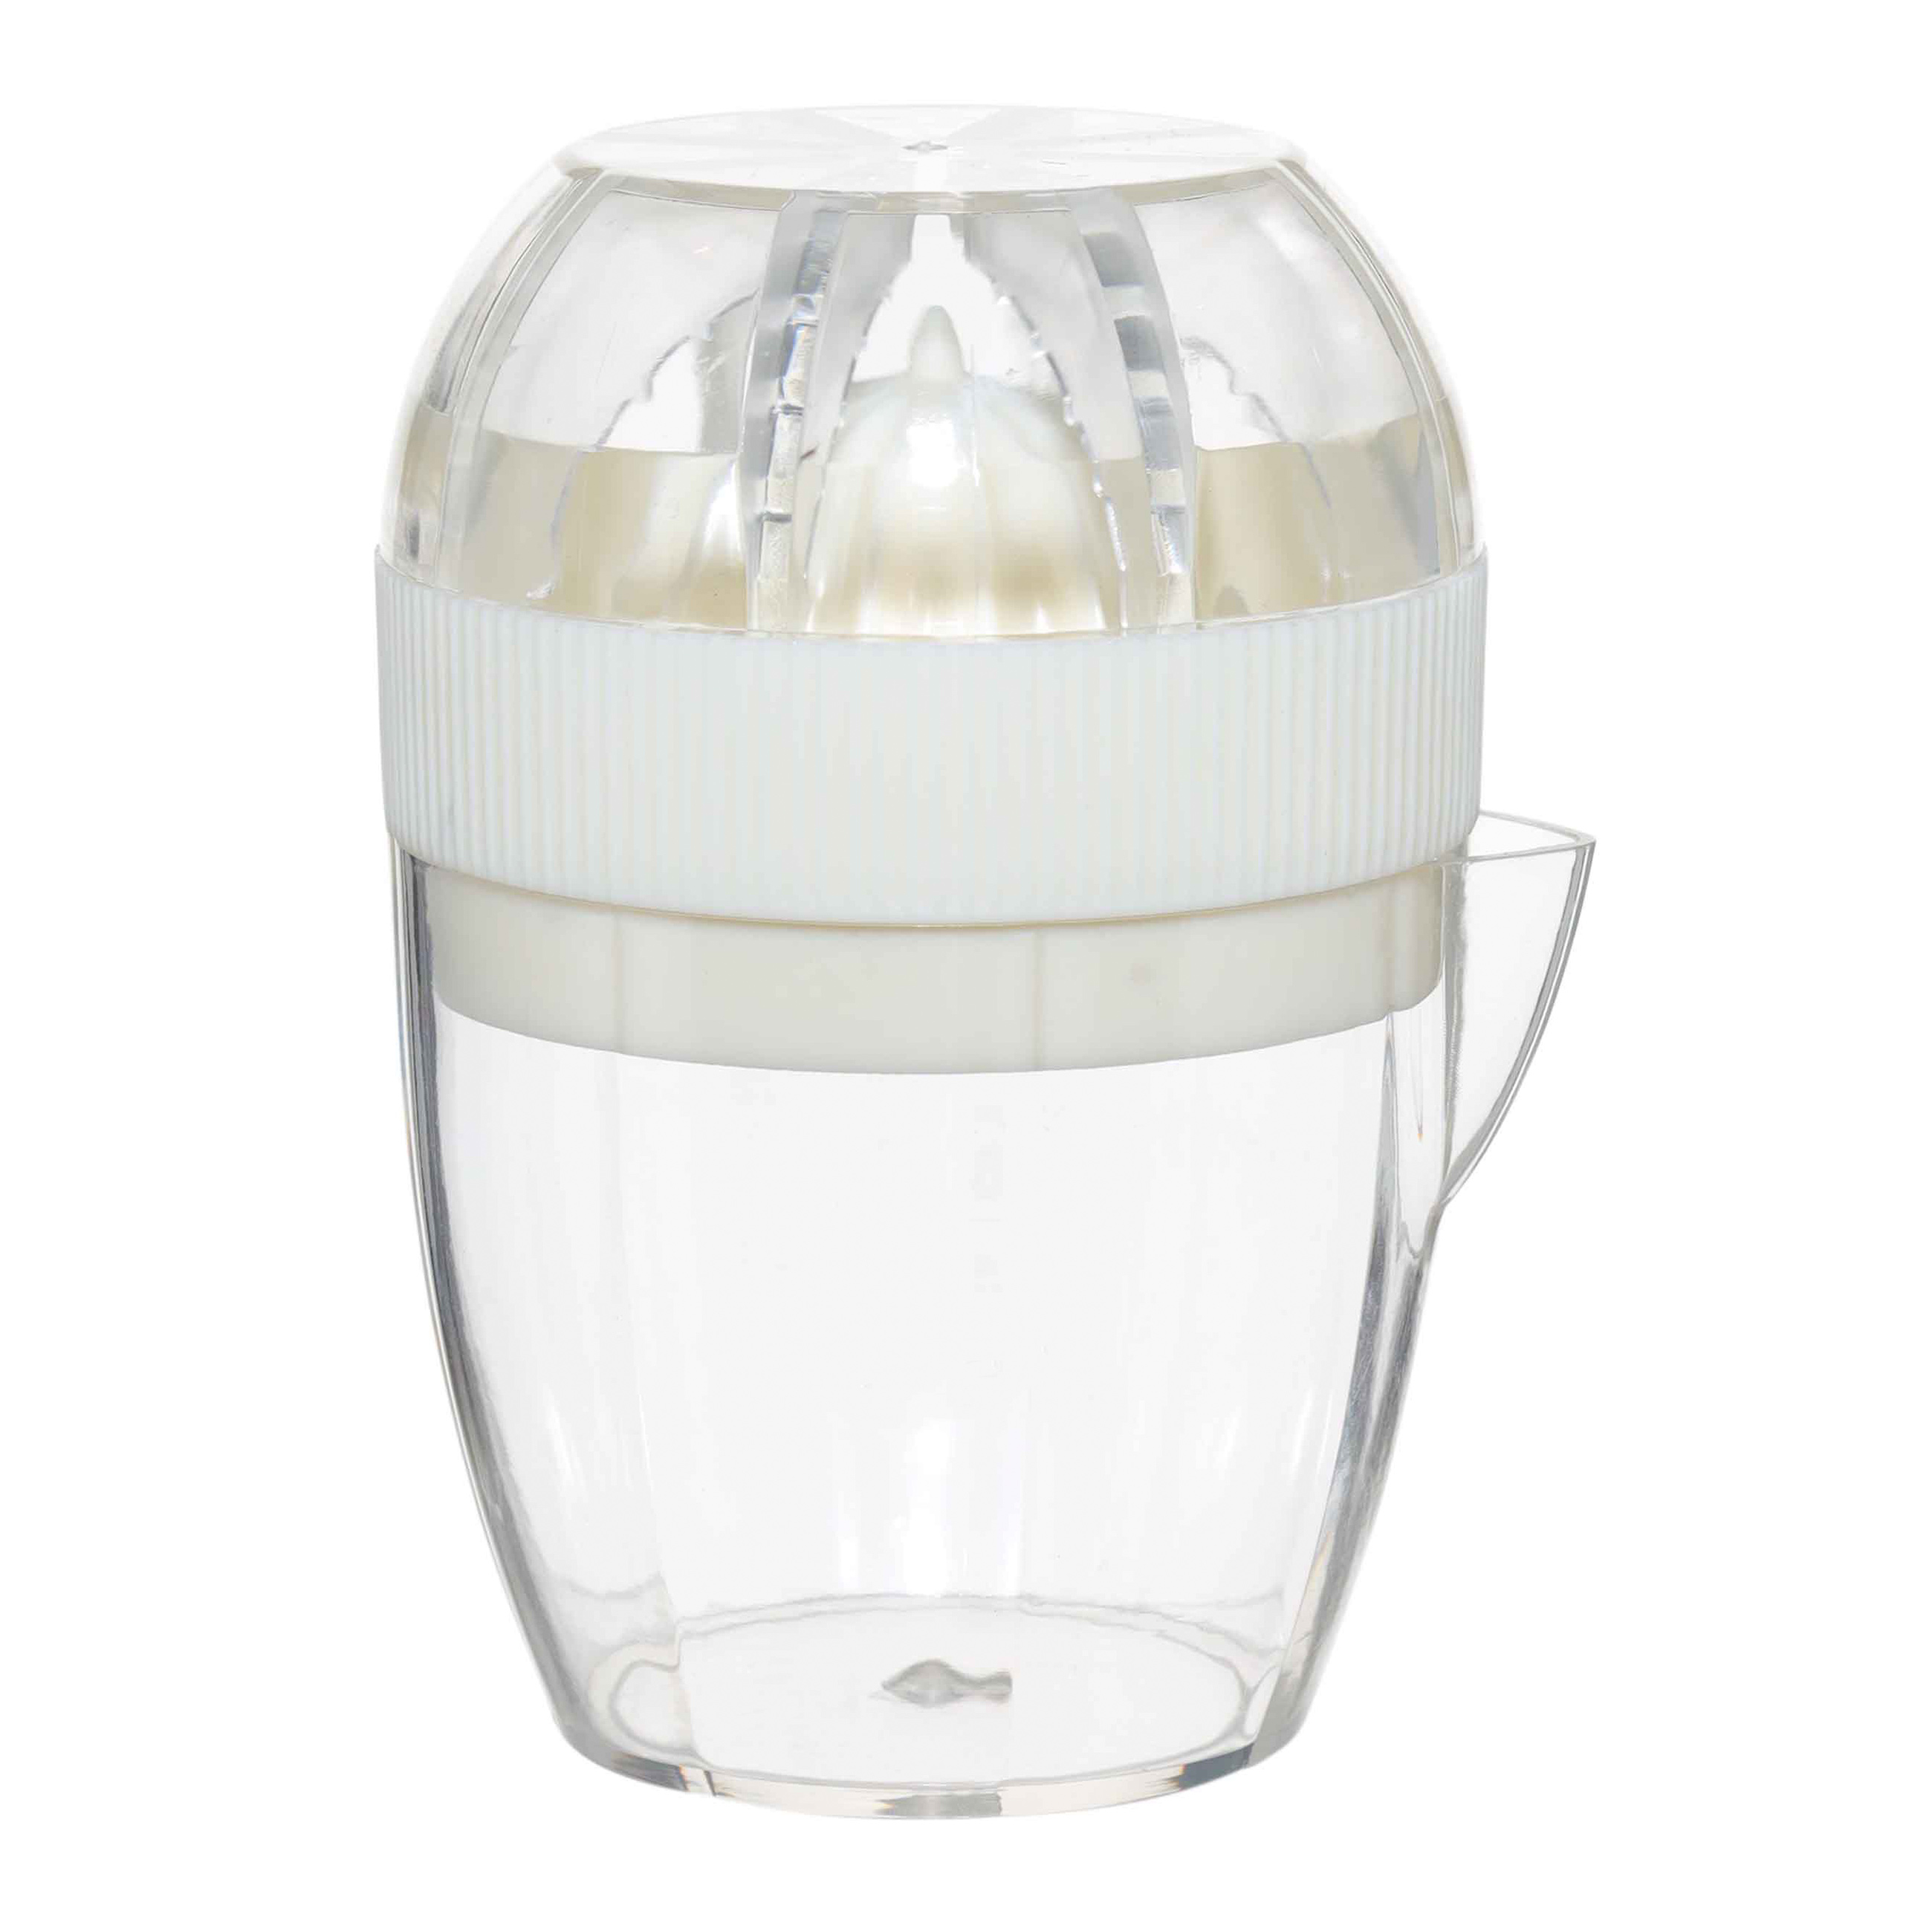 Соковыжималка для цитрусовых, 125 мл, с крышкой-держателем, пластик, молочная, Soft kitchen изображение № 2